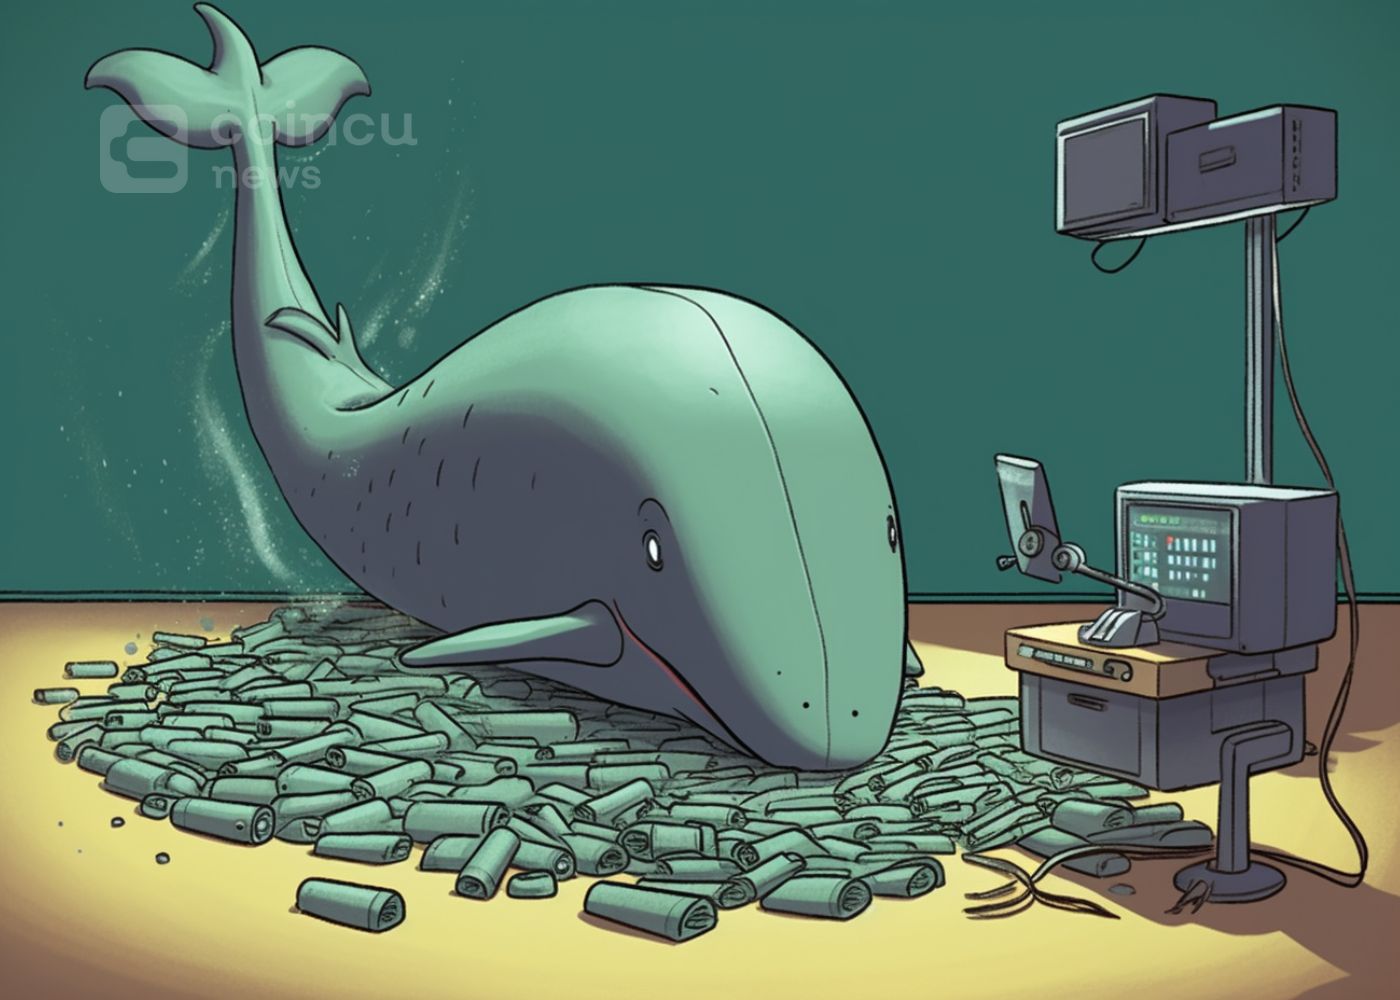 胜率100%的聪明鲸ETH 40天提现15万美元